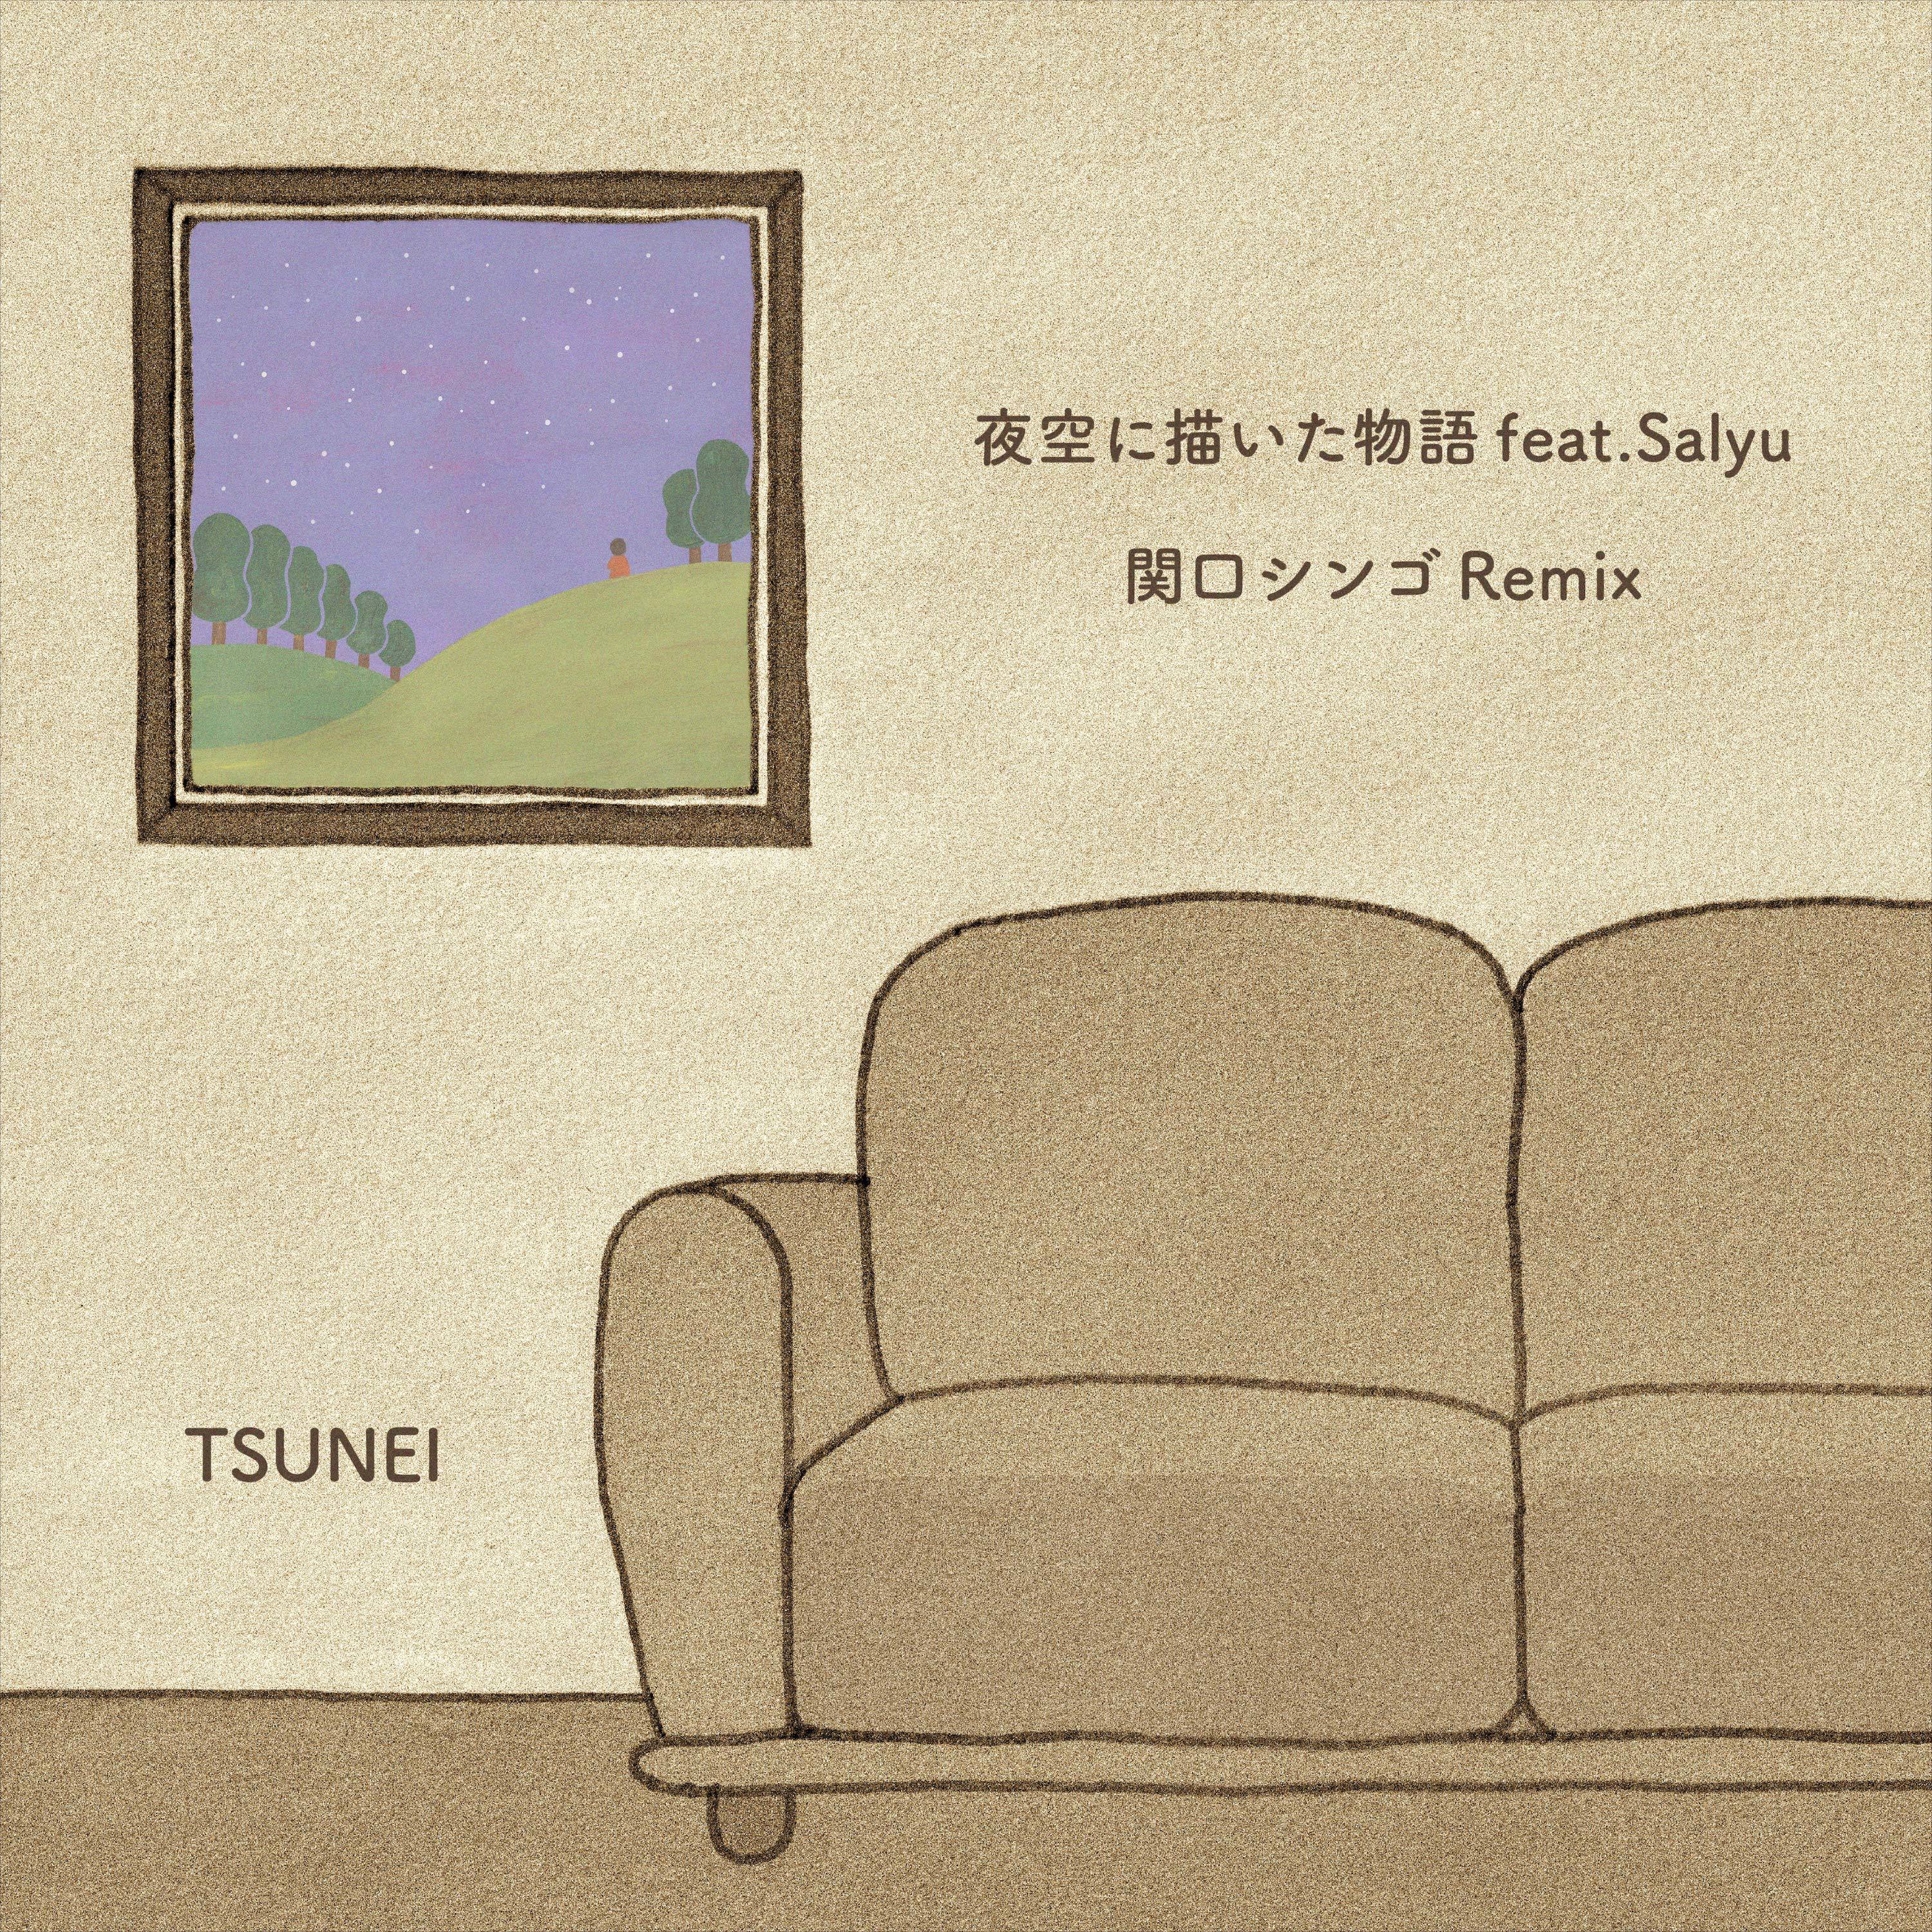 TSUNEI - 夜空に描いた物語 (関口シンゴ Remix)